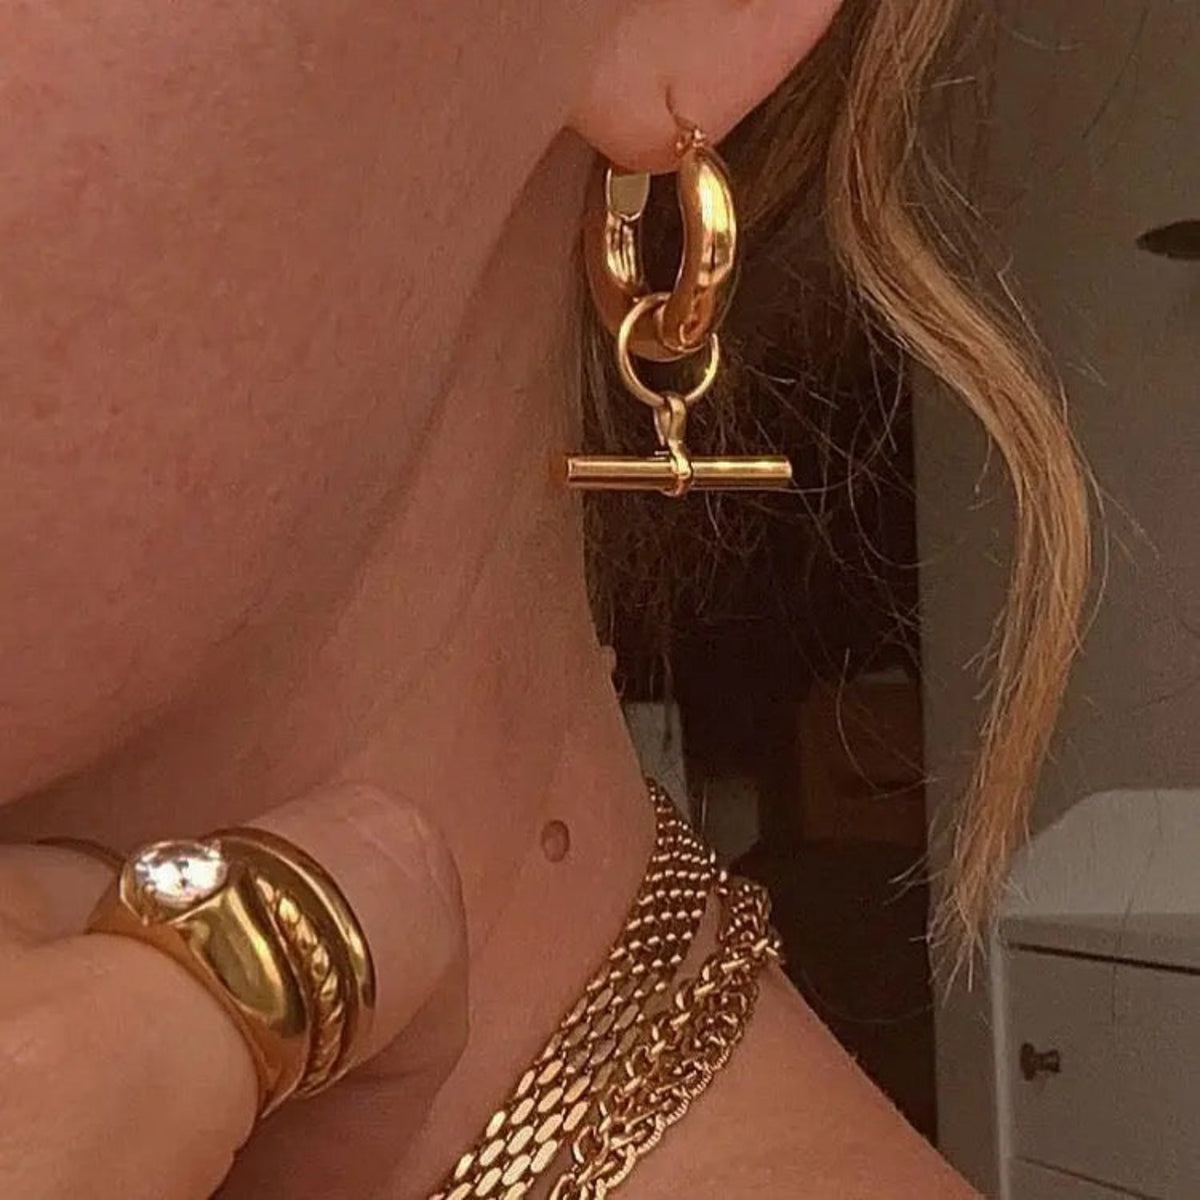 zaya collective earrings 18k gold filled hoop earrings